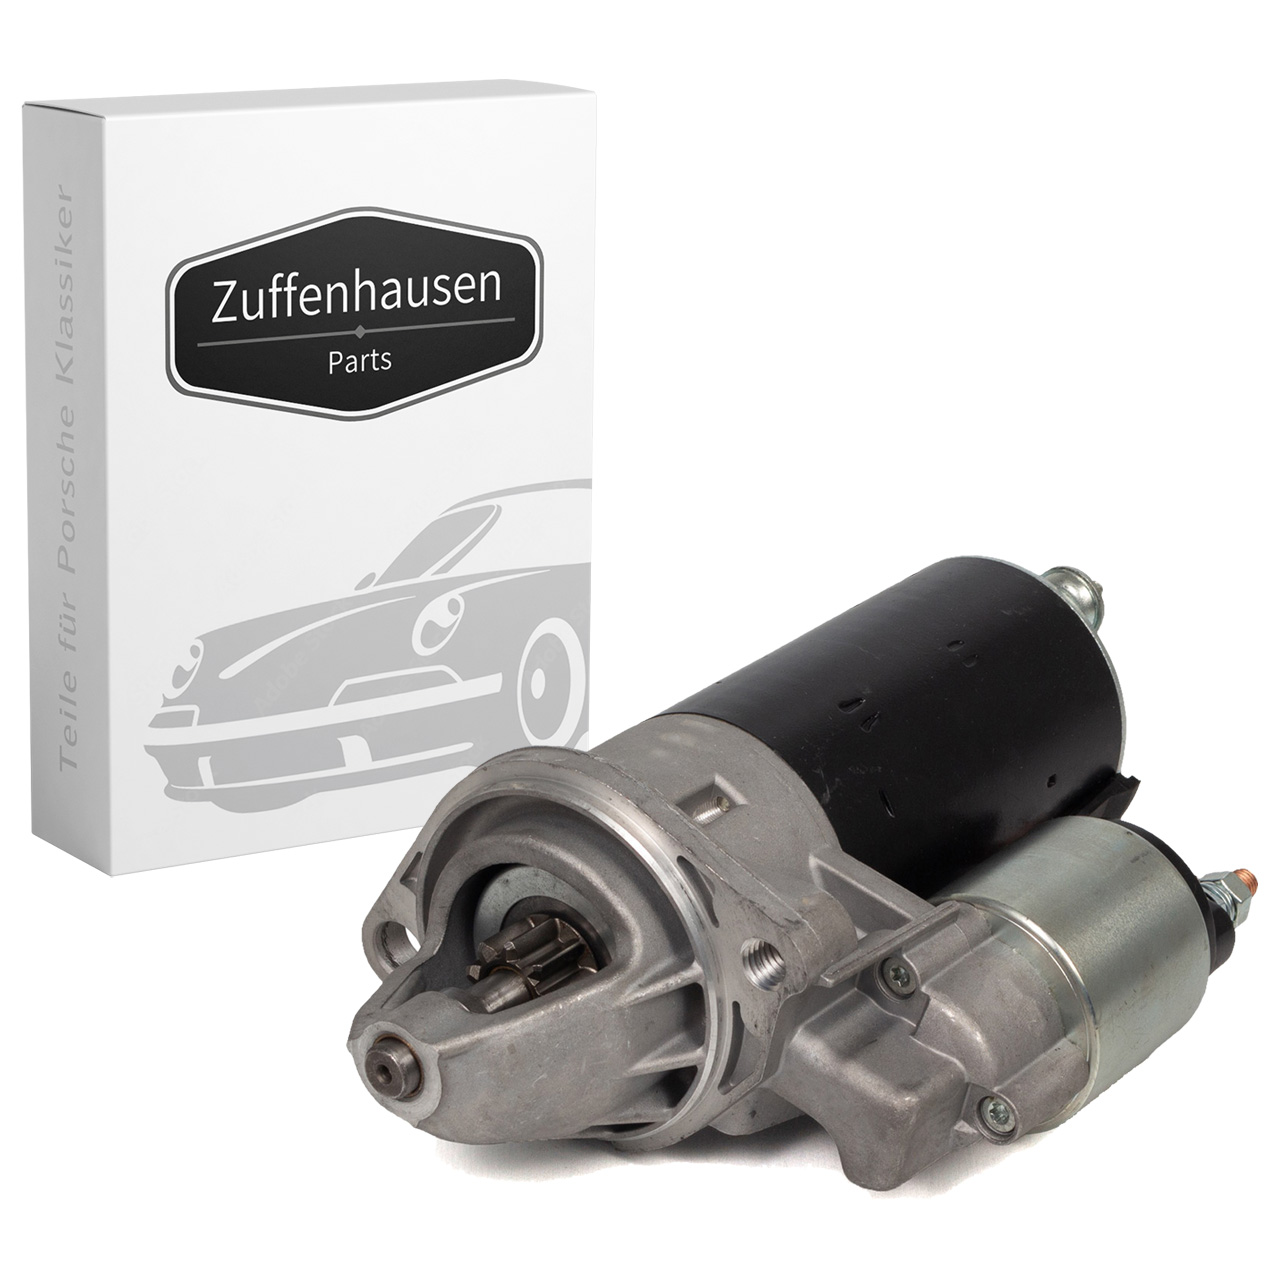 Zuffenhausen Parts Motor de arranque-0